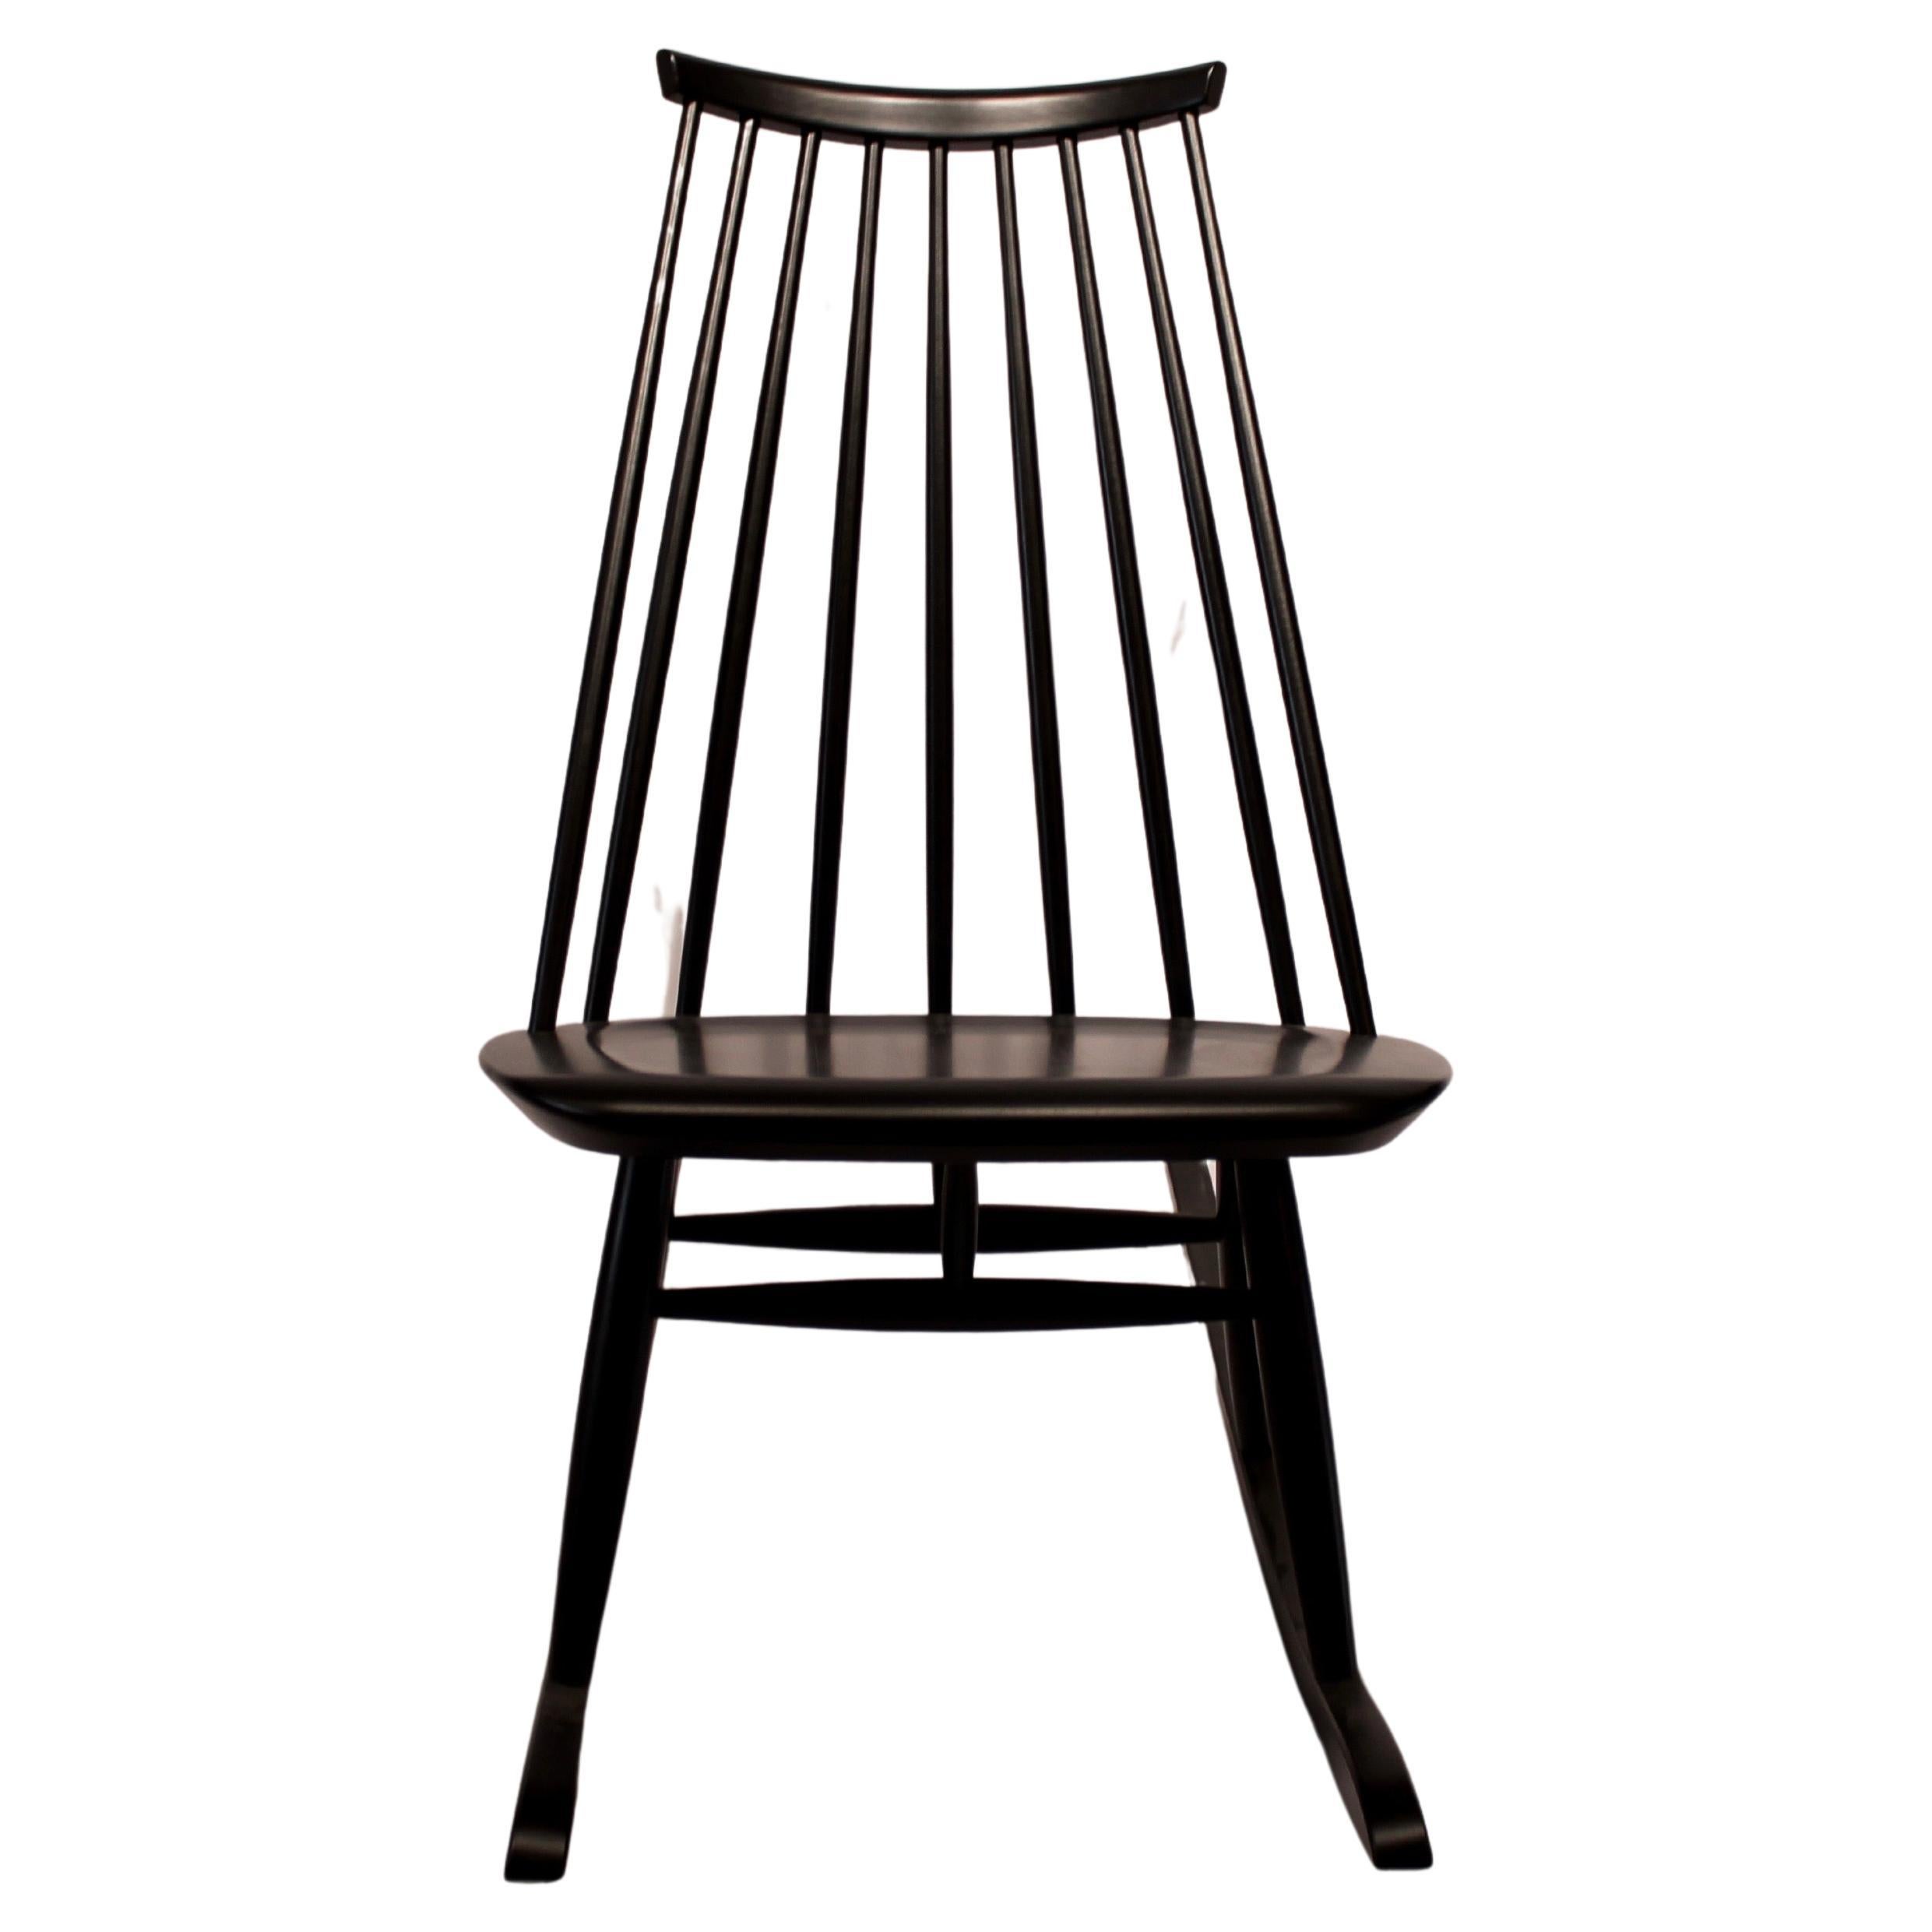 Mademoiselle Rocking Chair Designed by Ilmari Tapiovaara in 1956 for Artek